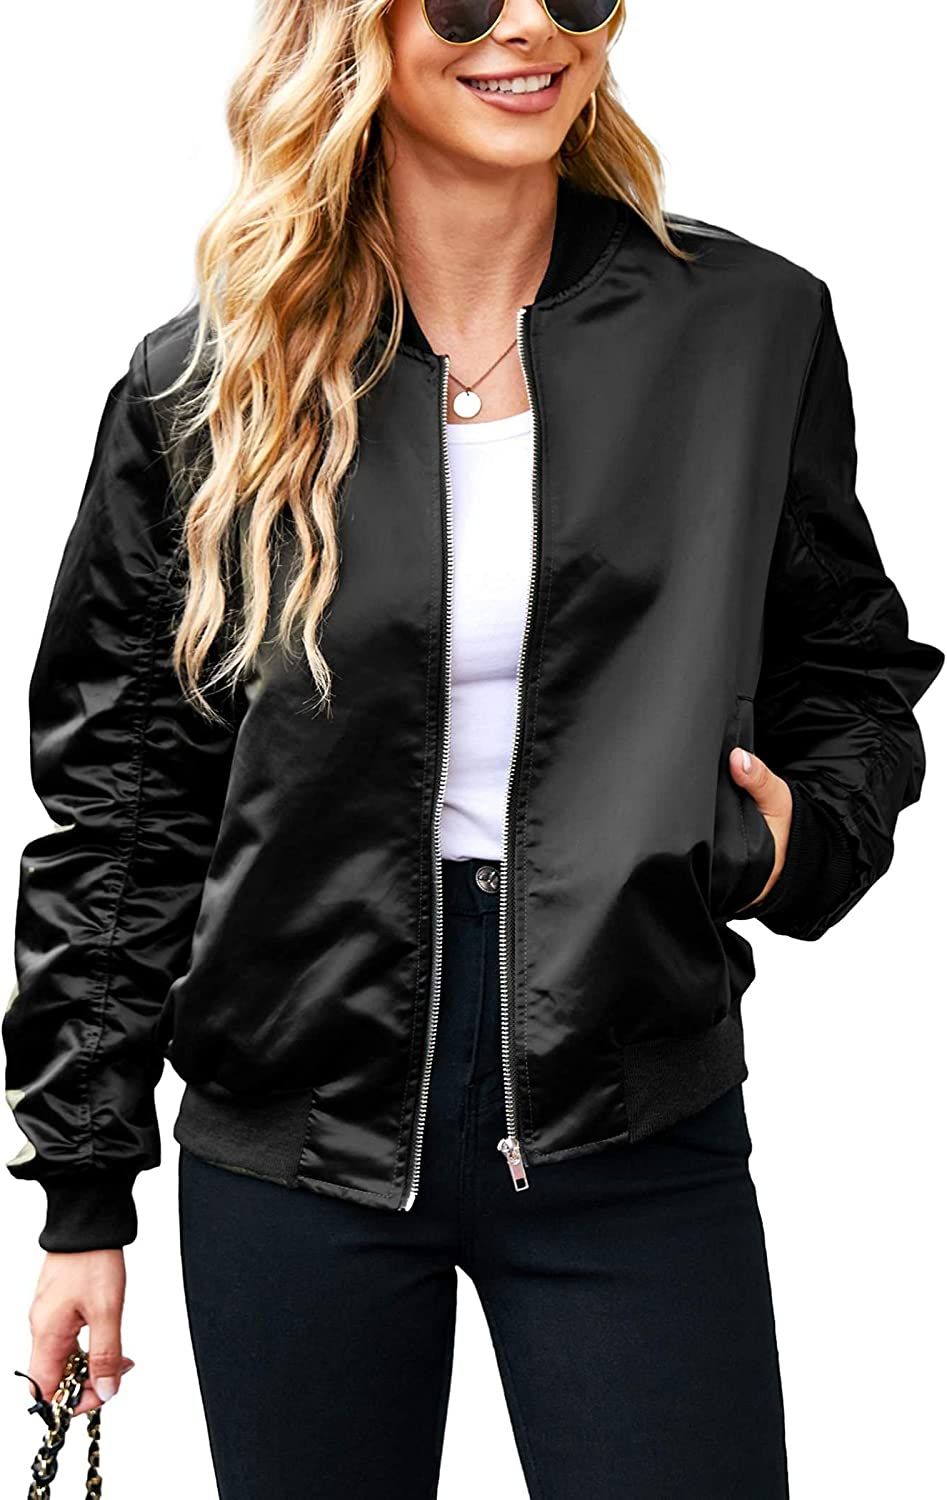 ACEVOG Women Fashion Satin Bomber Jacket Zip Up Casual Jacket Coat with Pocket Outfit | Amazon (US)